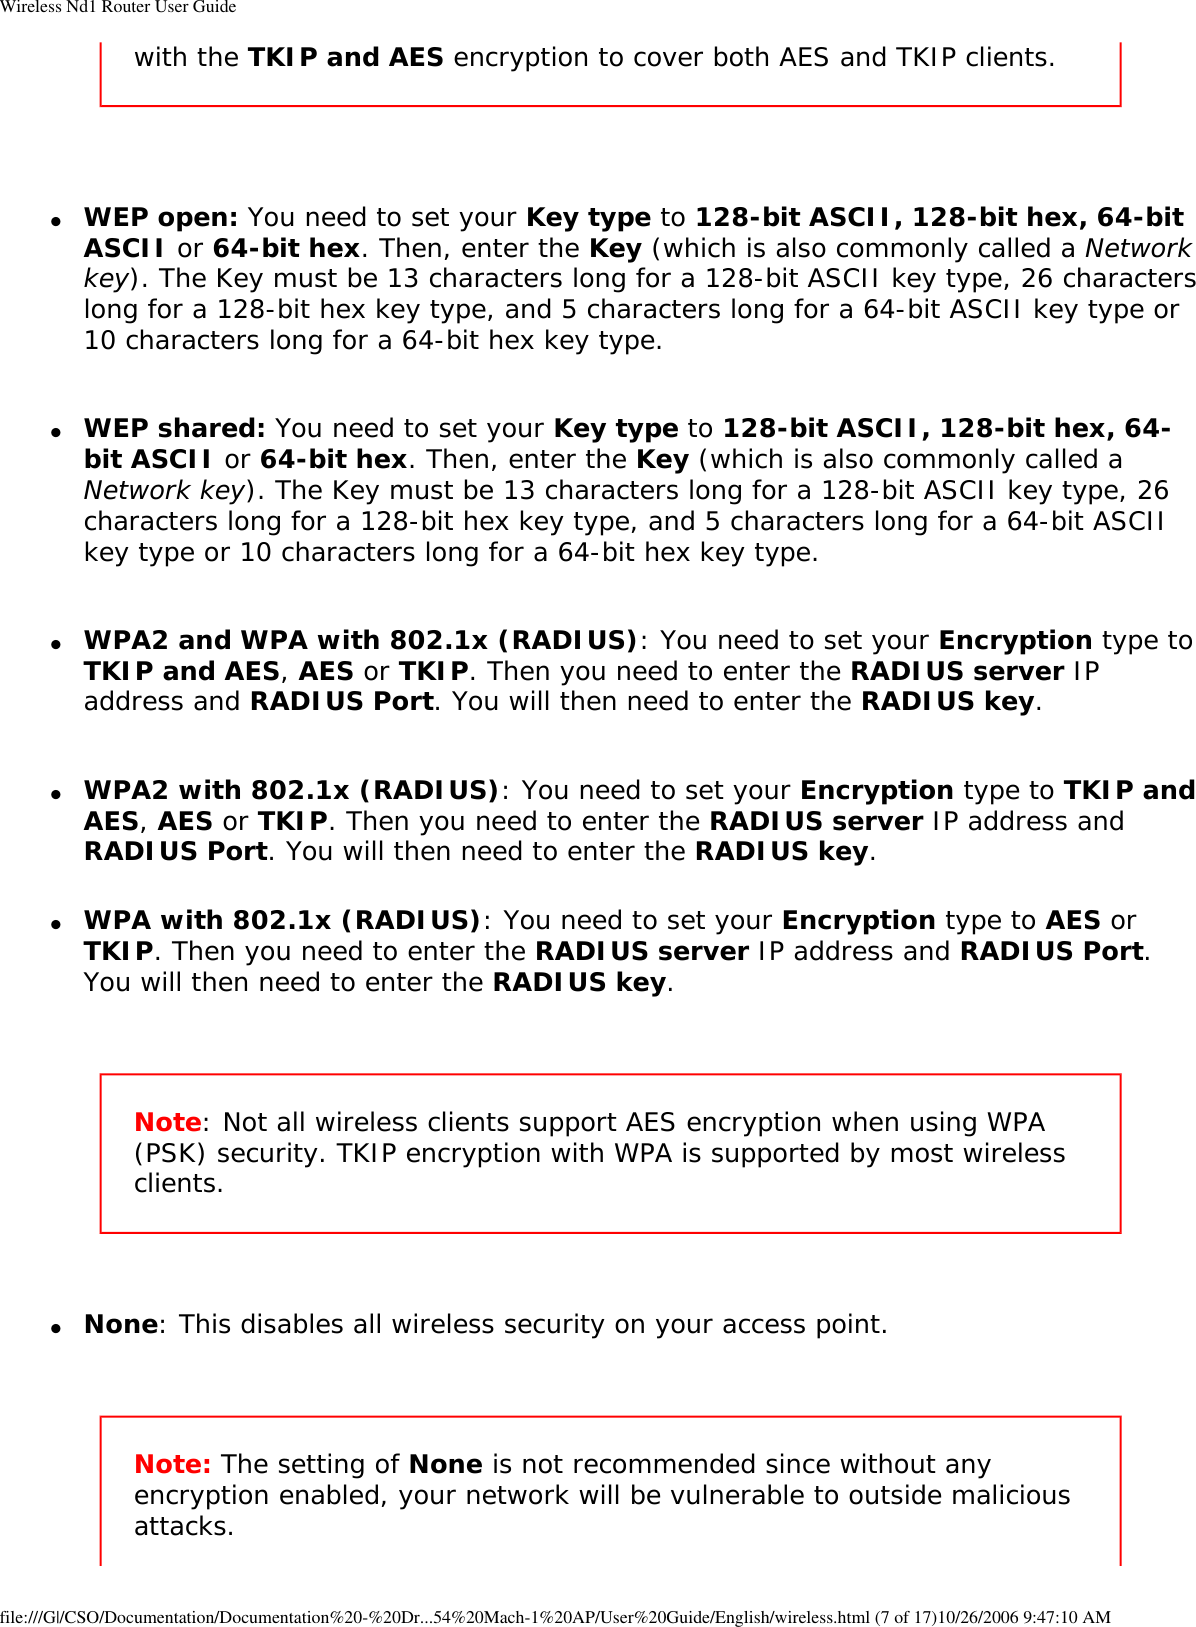 Page 43 of GemTek Technology A950630GN USRobotics Wireless Nd1 Access Point User Manual Manual